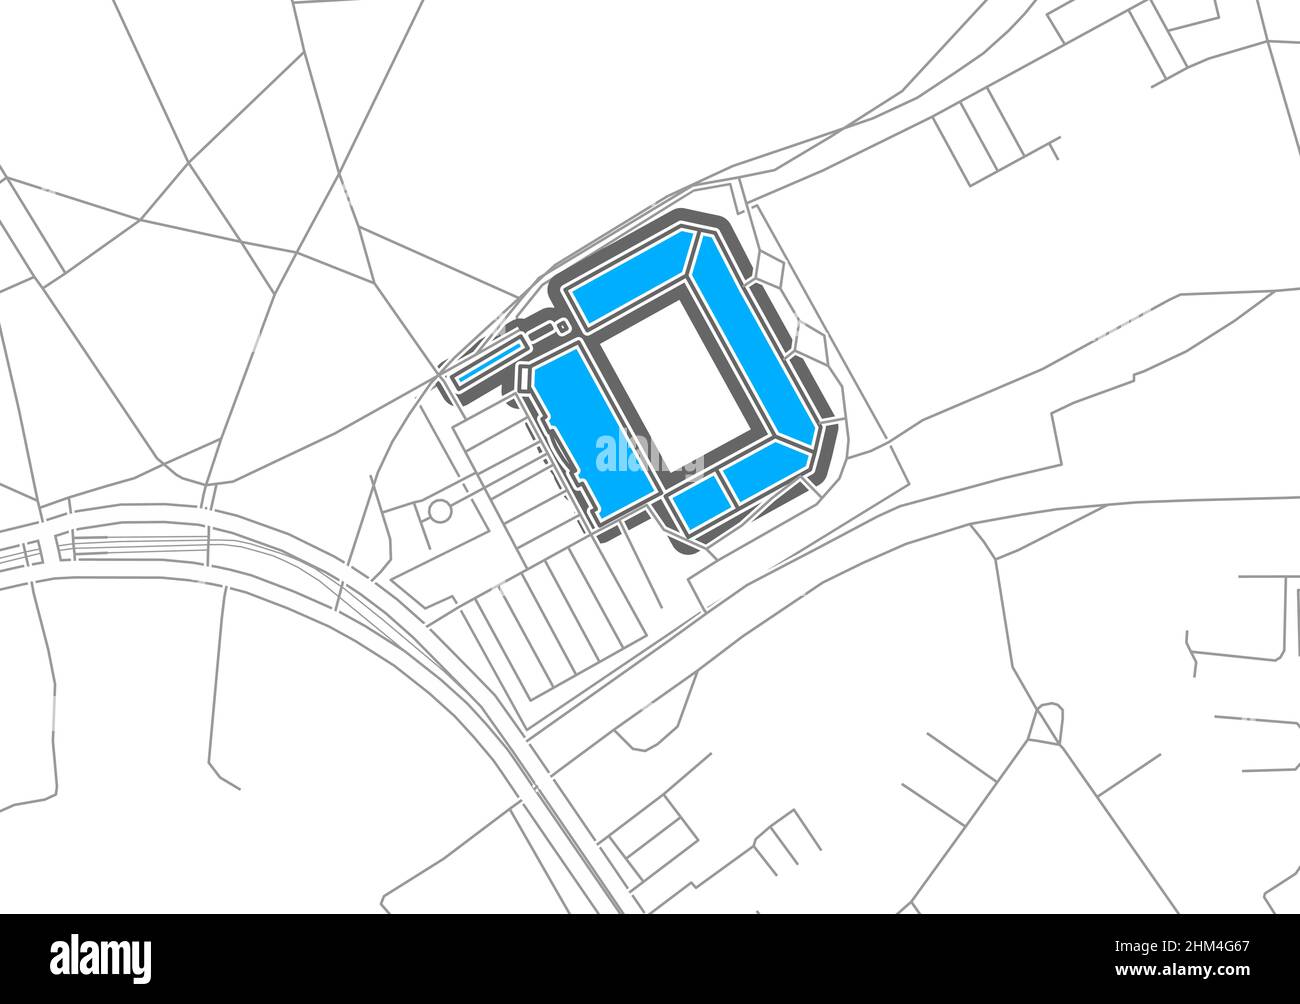 Berlino, Stadio di Calcio, mappa vettoriale. La mappa della bundesliga Statium è stata disegnata con aree bianche e linee per le strade principali, strade laterali. Illustrazione Vettoriale